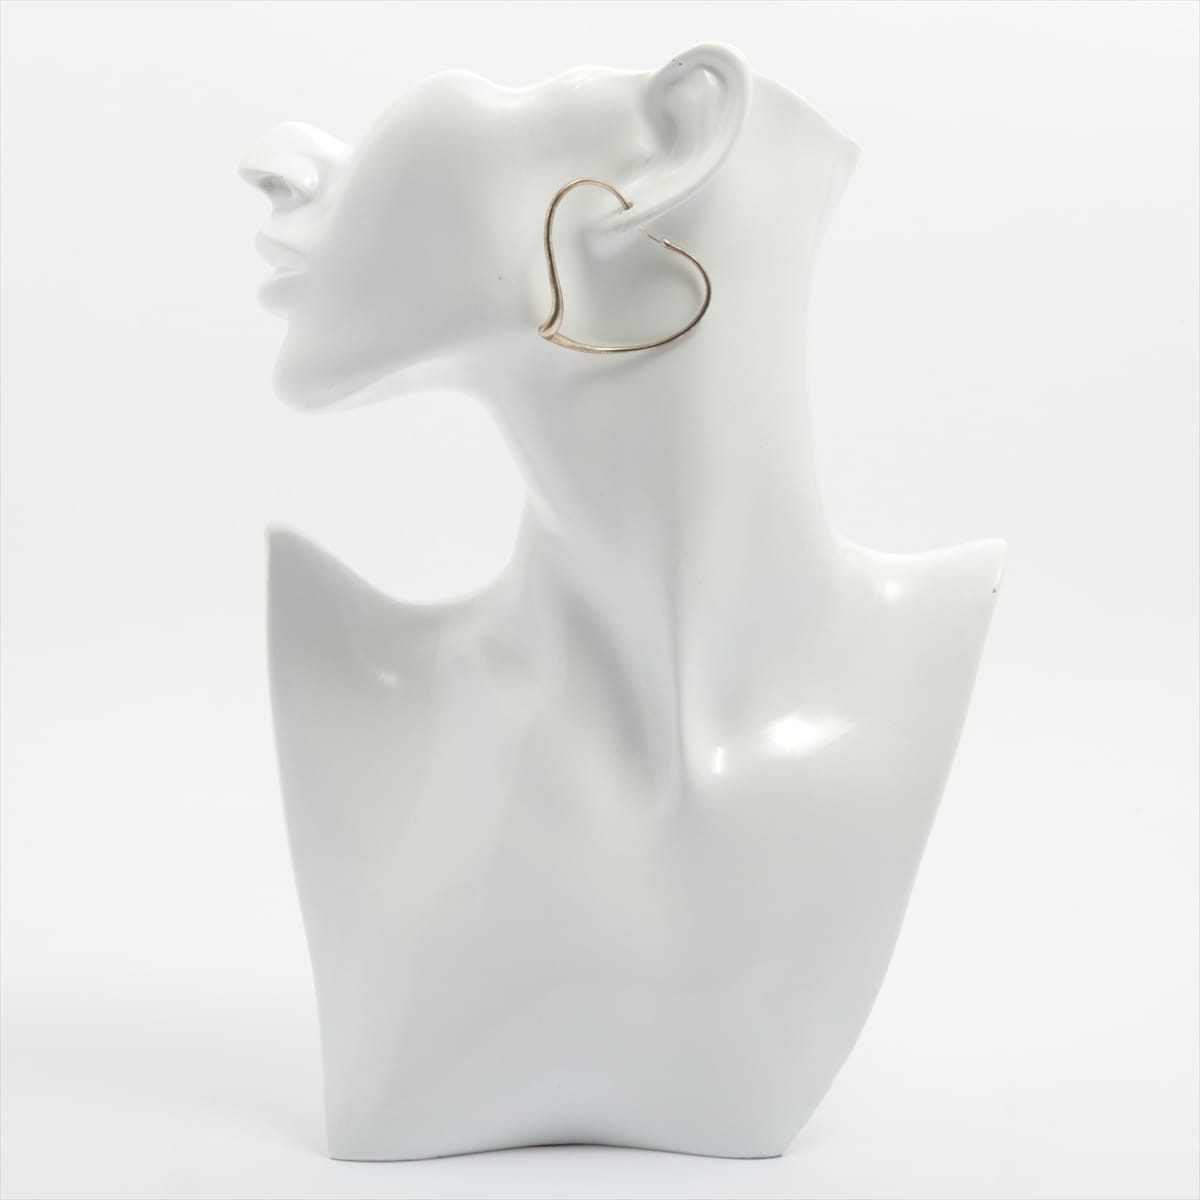 Tiffany Open Heart Hoop Earrings 925 9.1g Silver